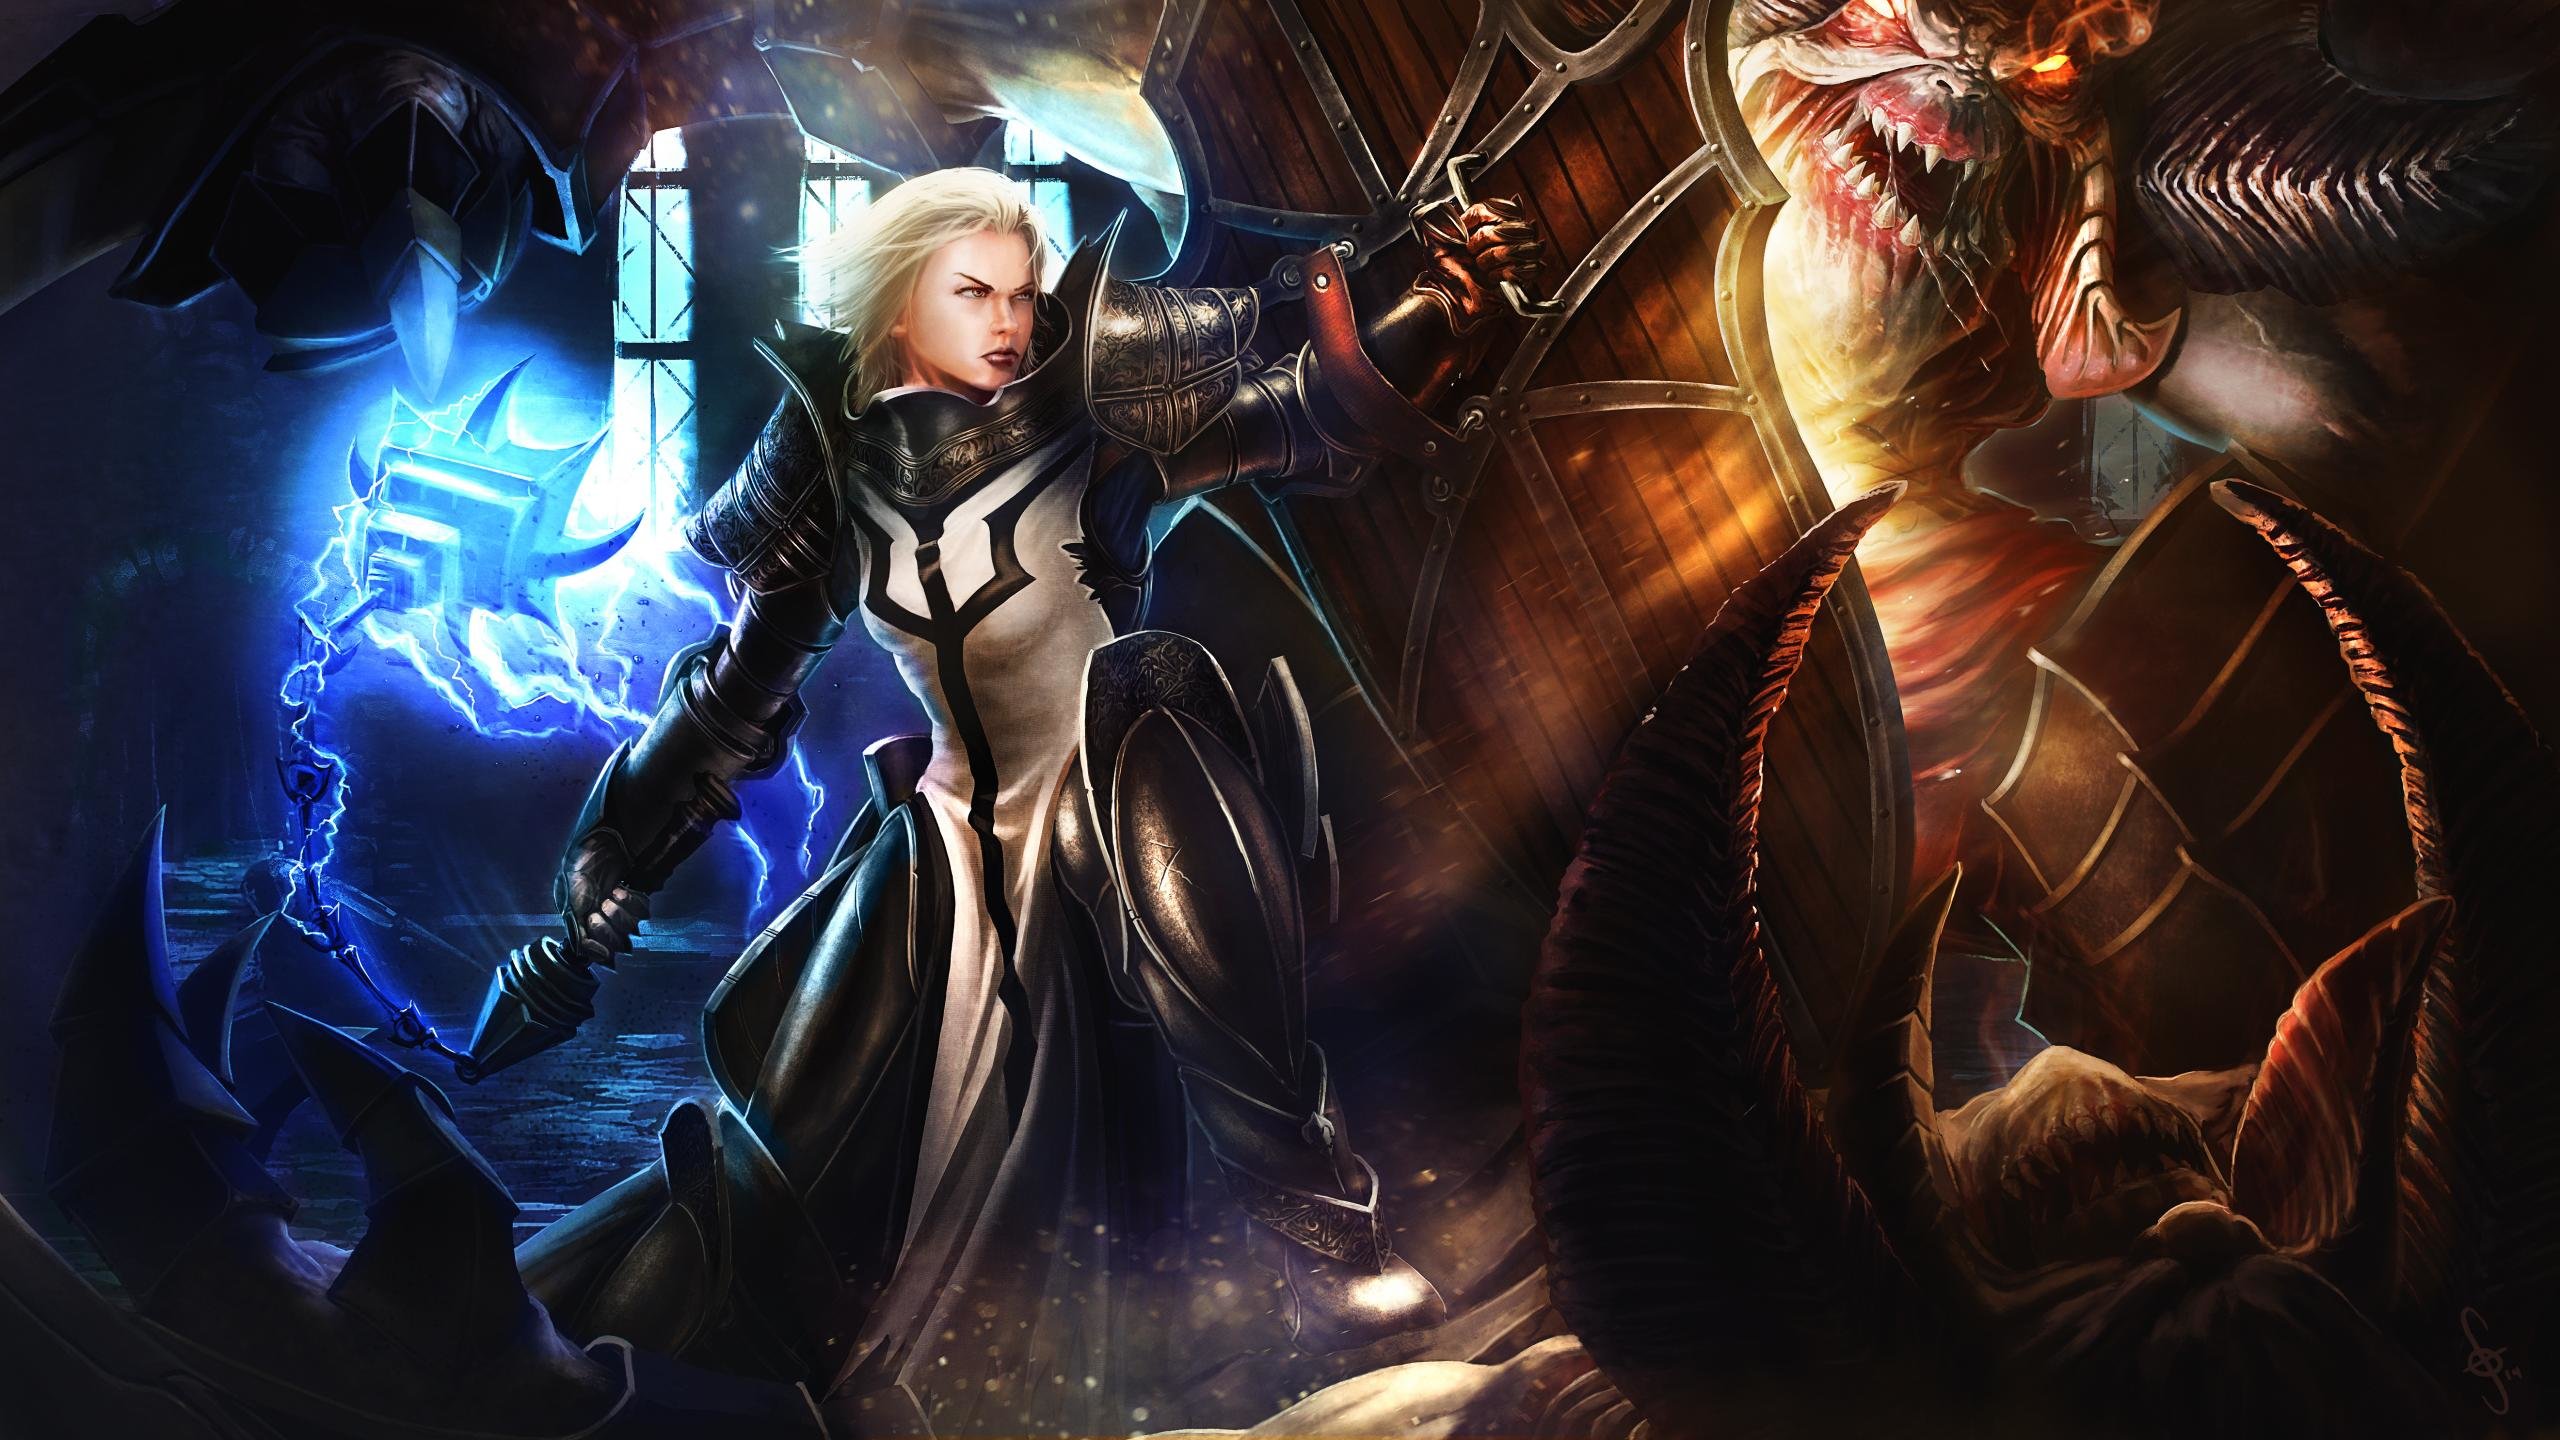 Awesome Diablo 3: Reaper Of Souls free wallpaper ID:400263 for hd 2560x1440 desktop